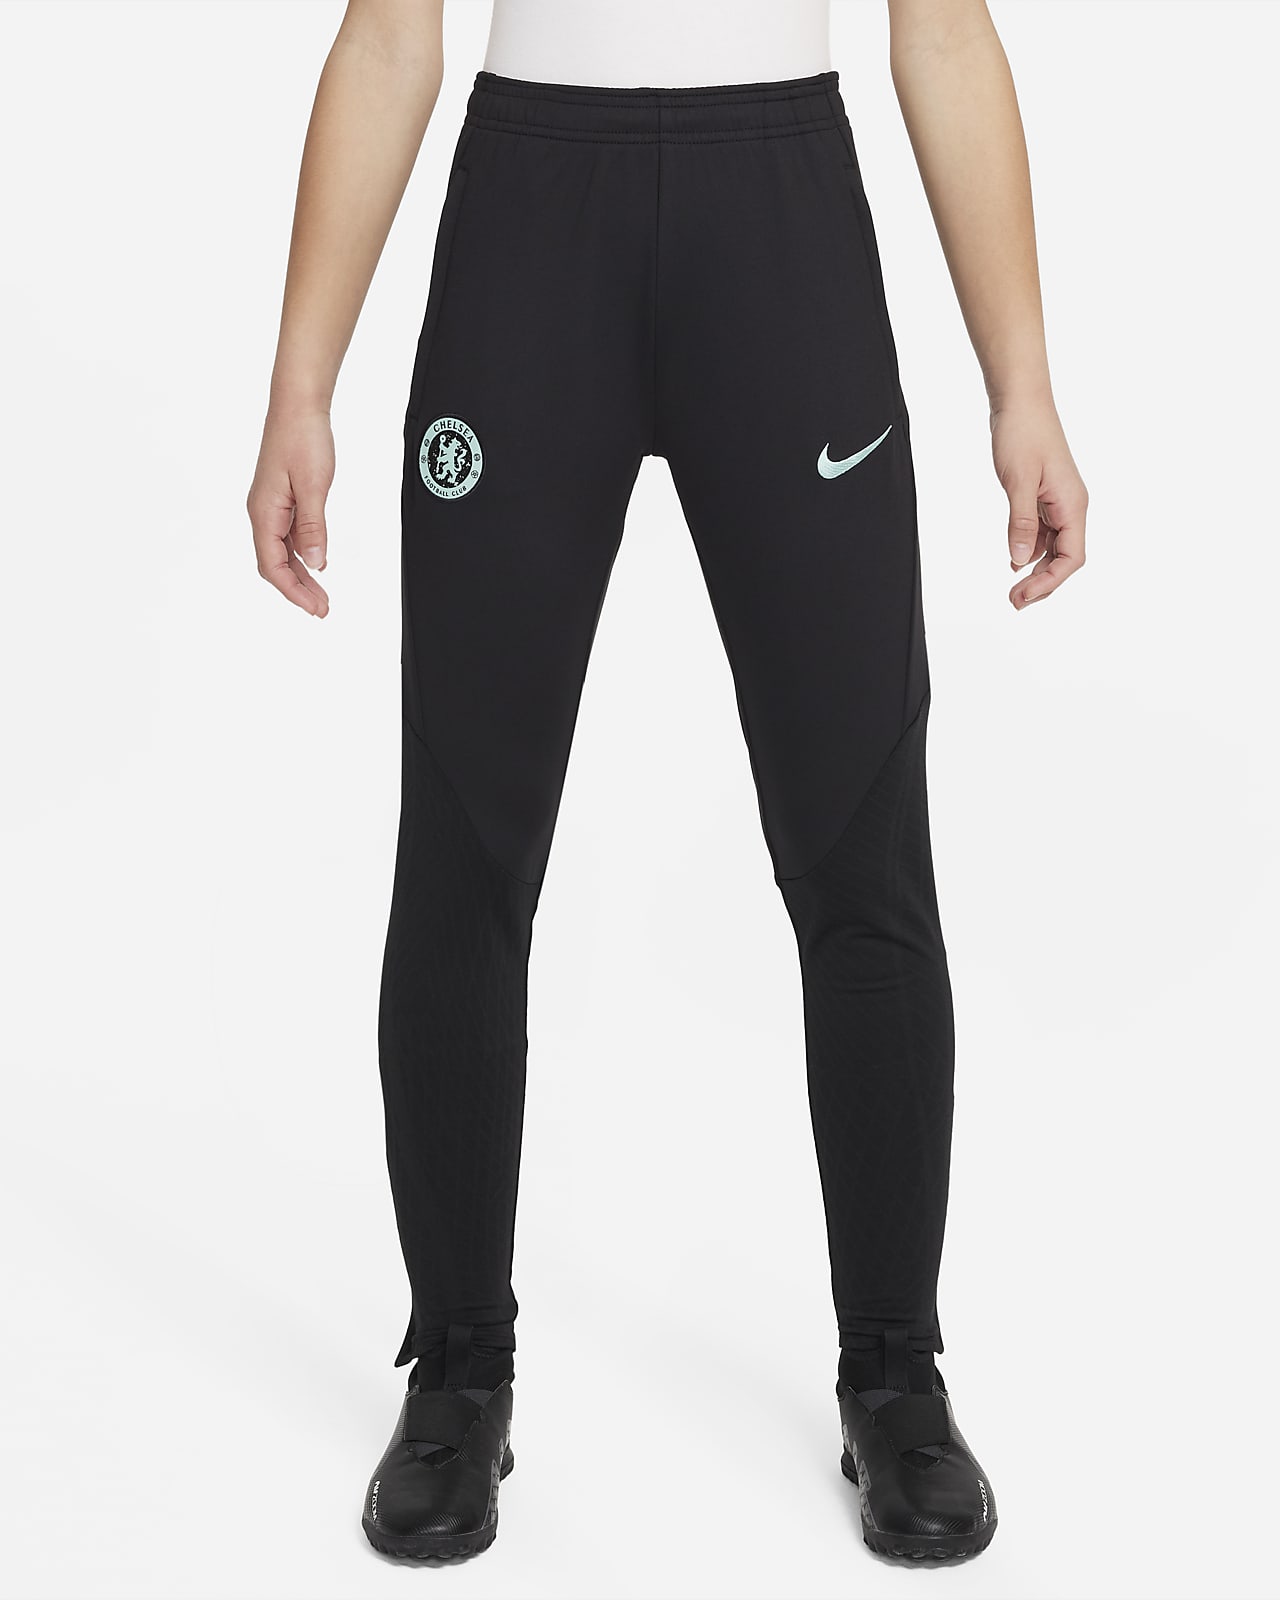 Ποδοσφαιρικό πλεκτό παντελόνι Nike Dri-FIT εναλλακτικής εμφάνισης Τσέλσι Strike για μεγάλα παιδιά